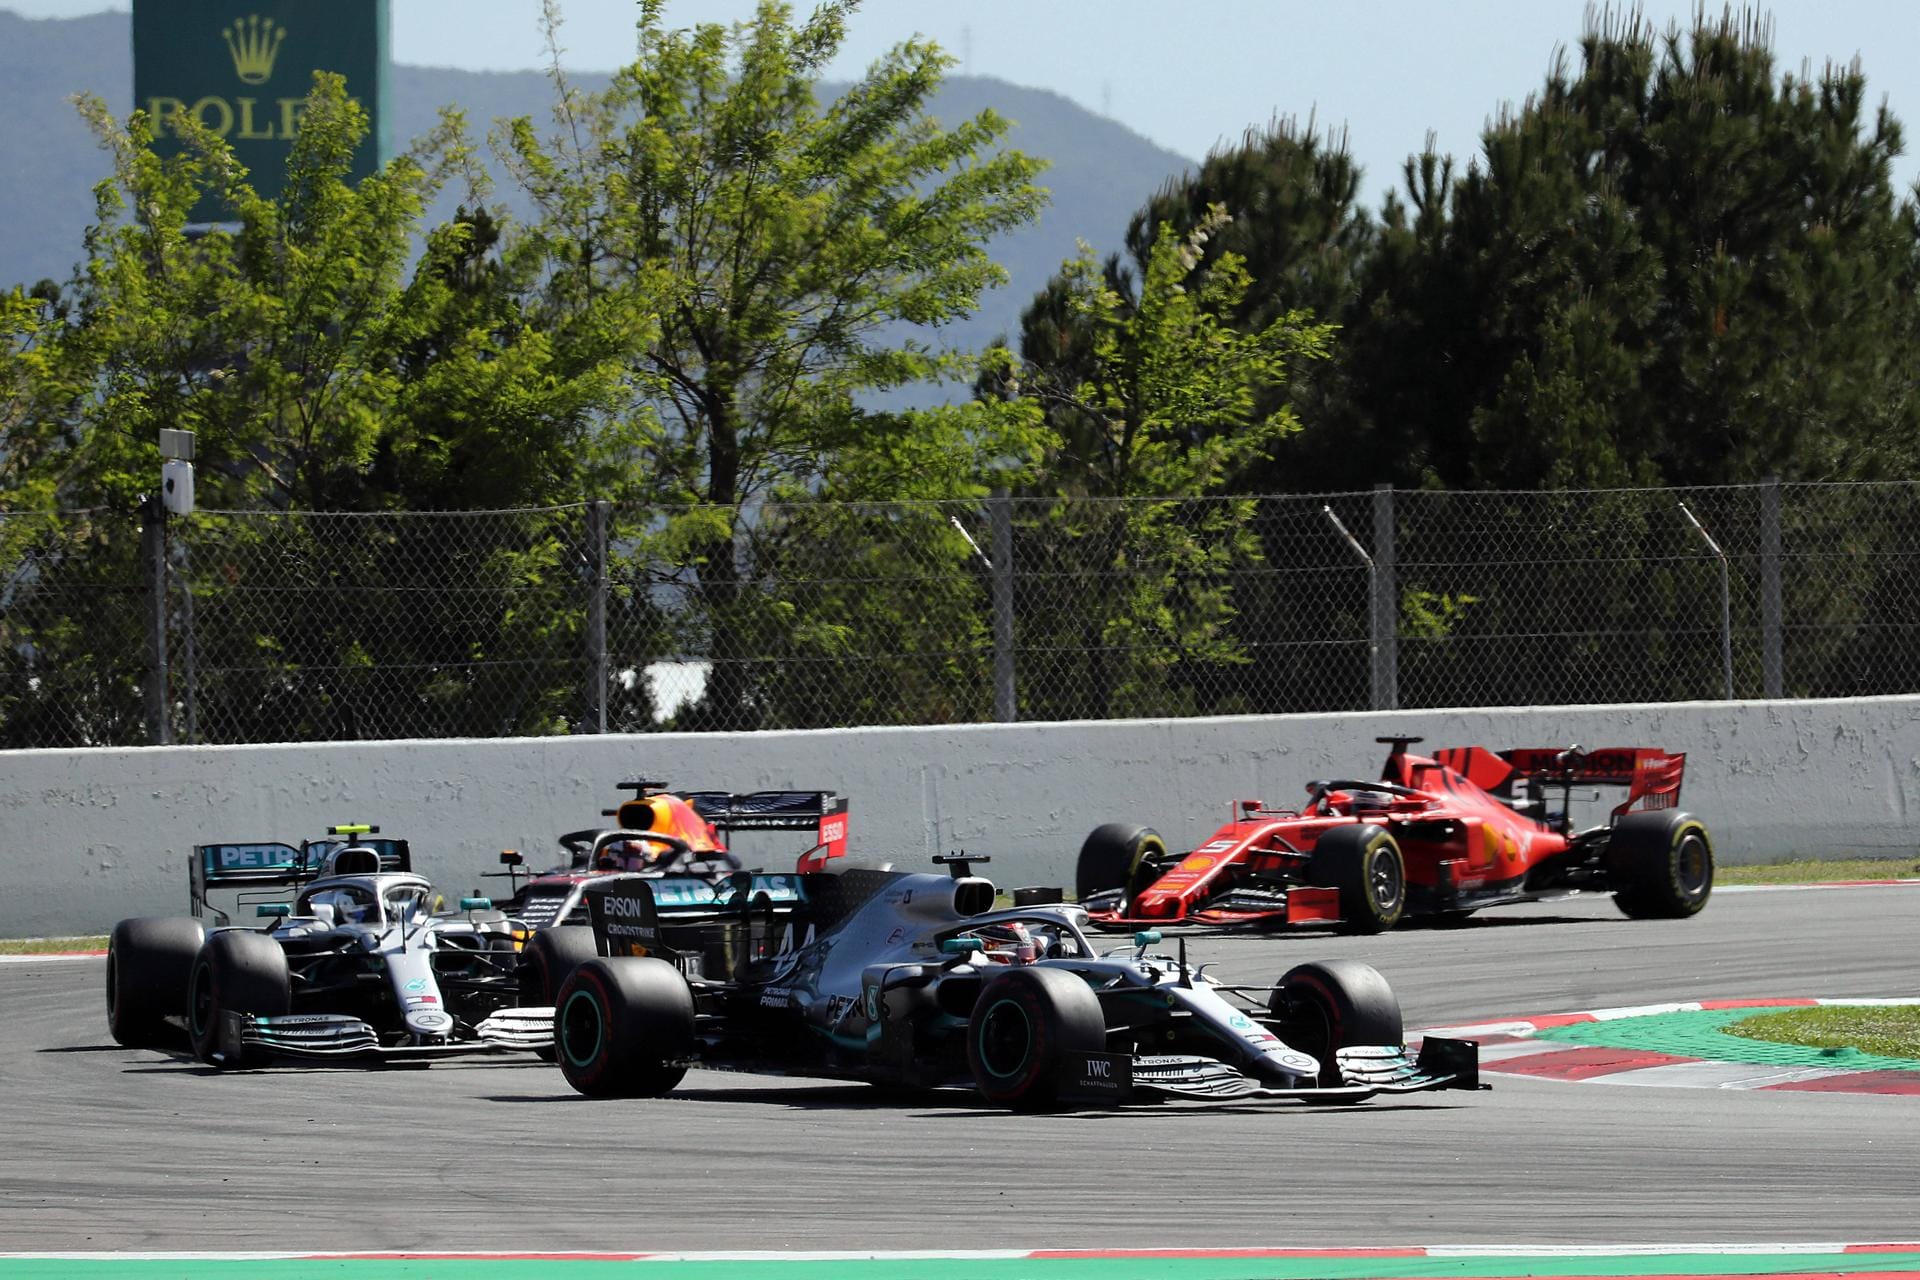 Mundo Deportivo (Spanien): "Nach dem fünften Sieg in Folge auf dem Circuit de Catalunya, diesmal angeführt von Lewis Hamilton vor Valtteri Bottas, vergrößert Mercedes seine Legende und baut den Rekord des besten Starts in der Geschichte eines Teams aus."